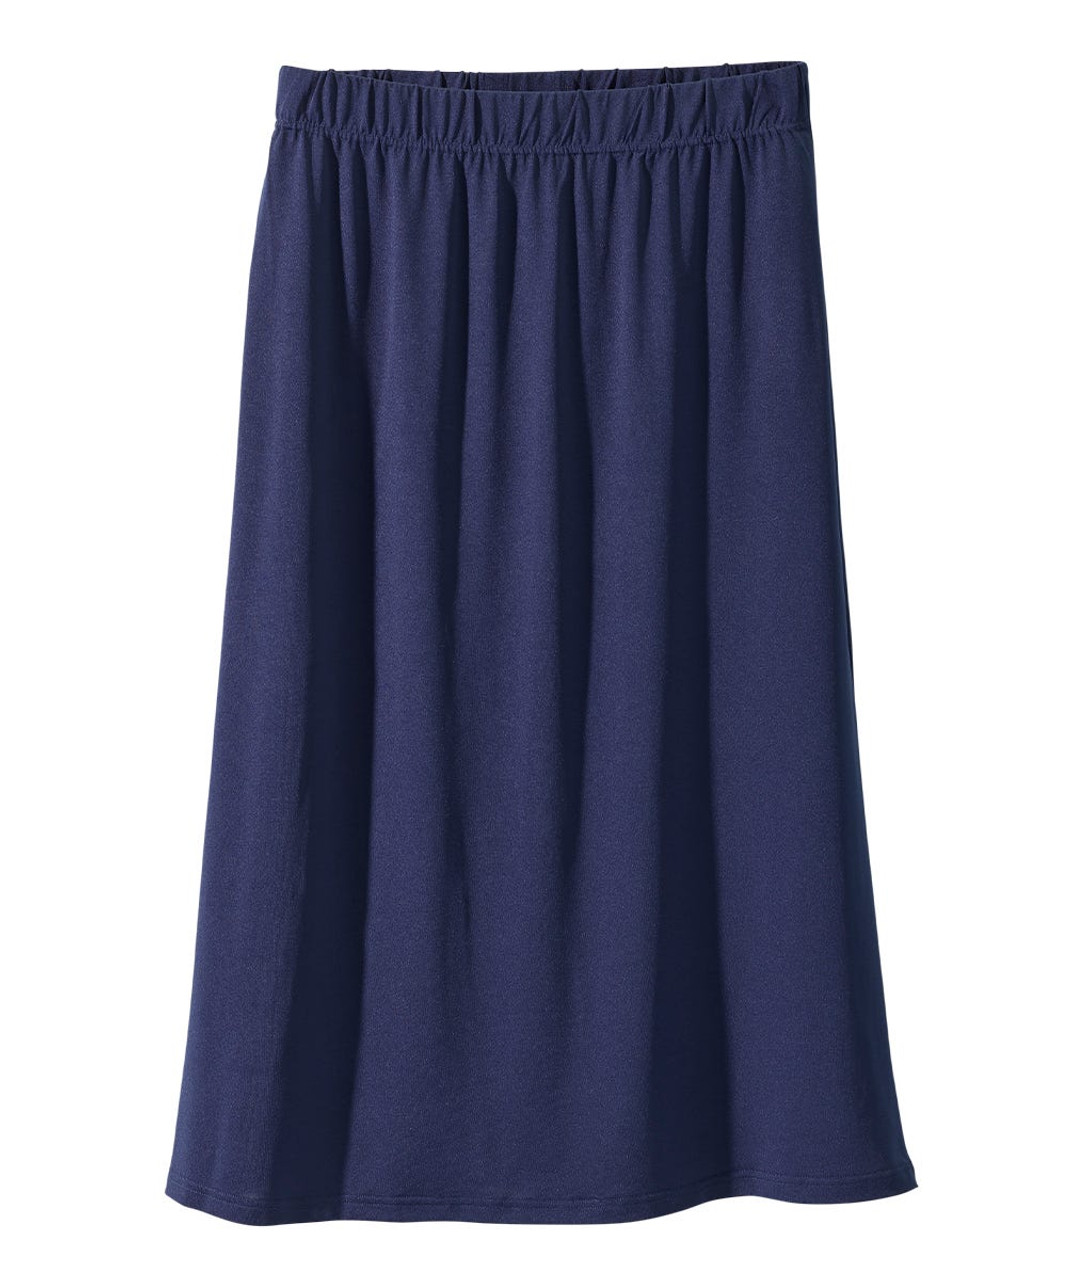 Silverts SV031 Senior Women's Pull-on Skirt Indigo, Size=3XL, SV031-SV773-3XL